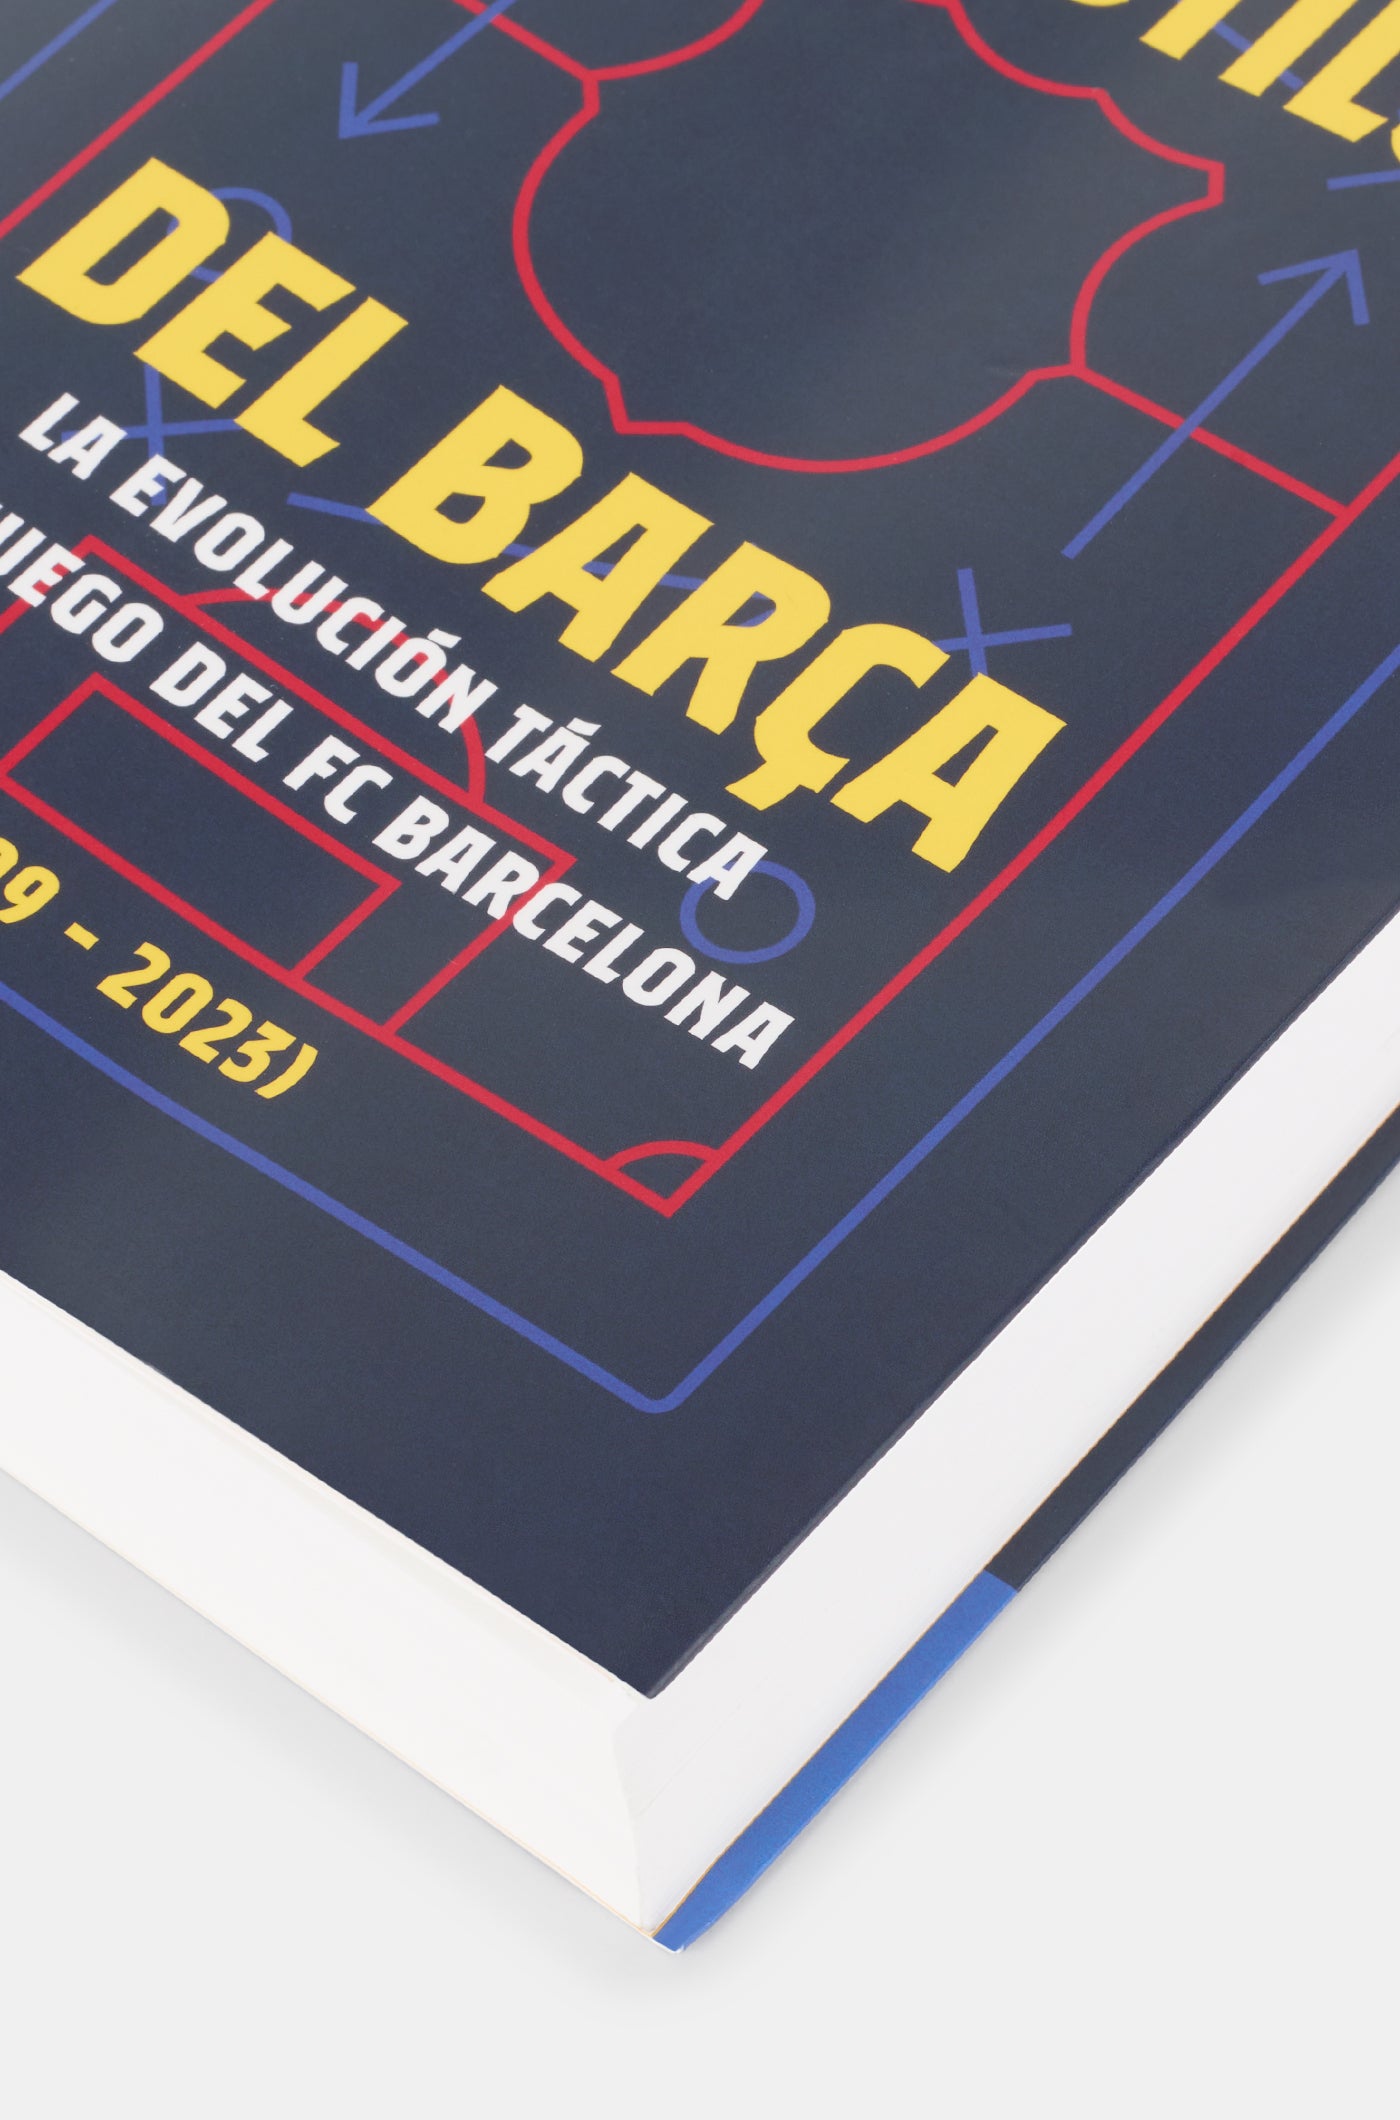 Book "El estilo del Barça" - Spanish